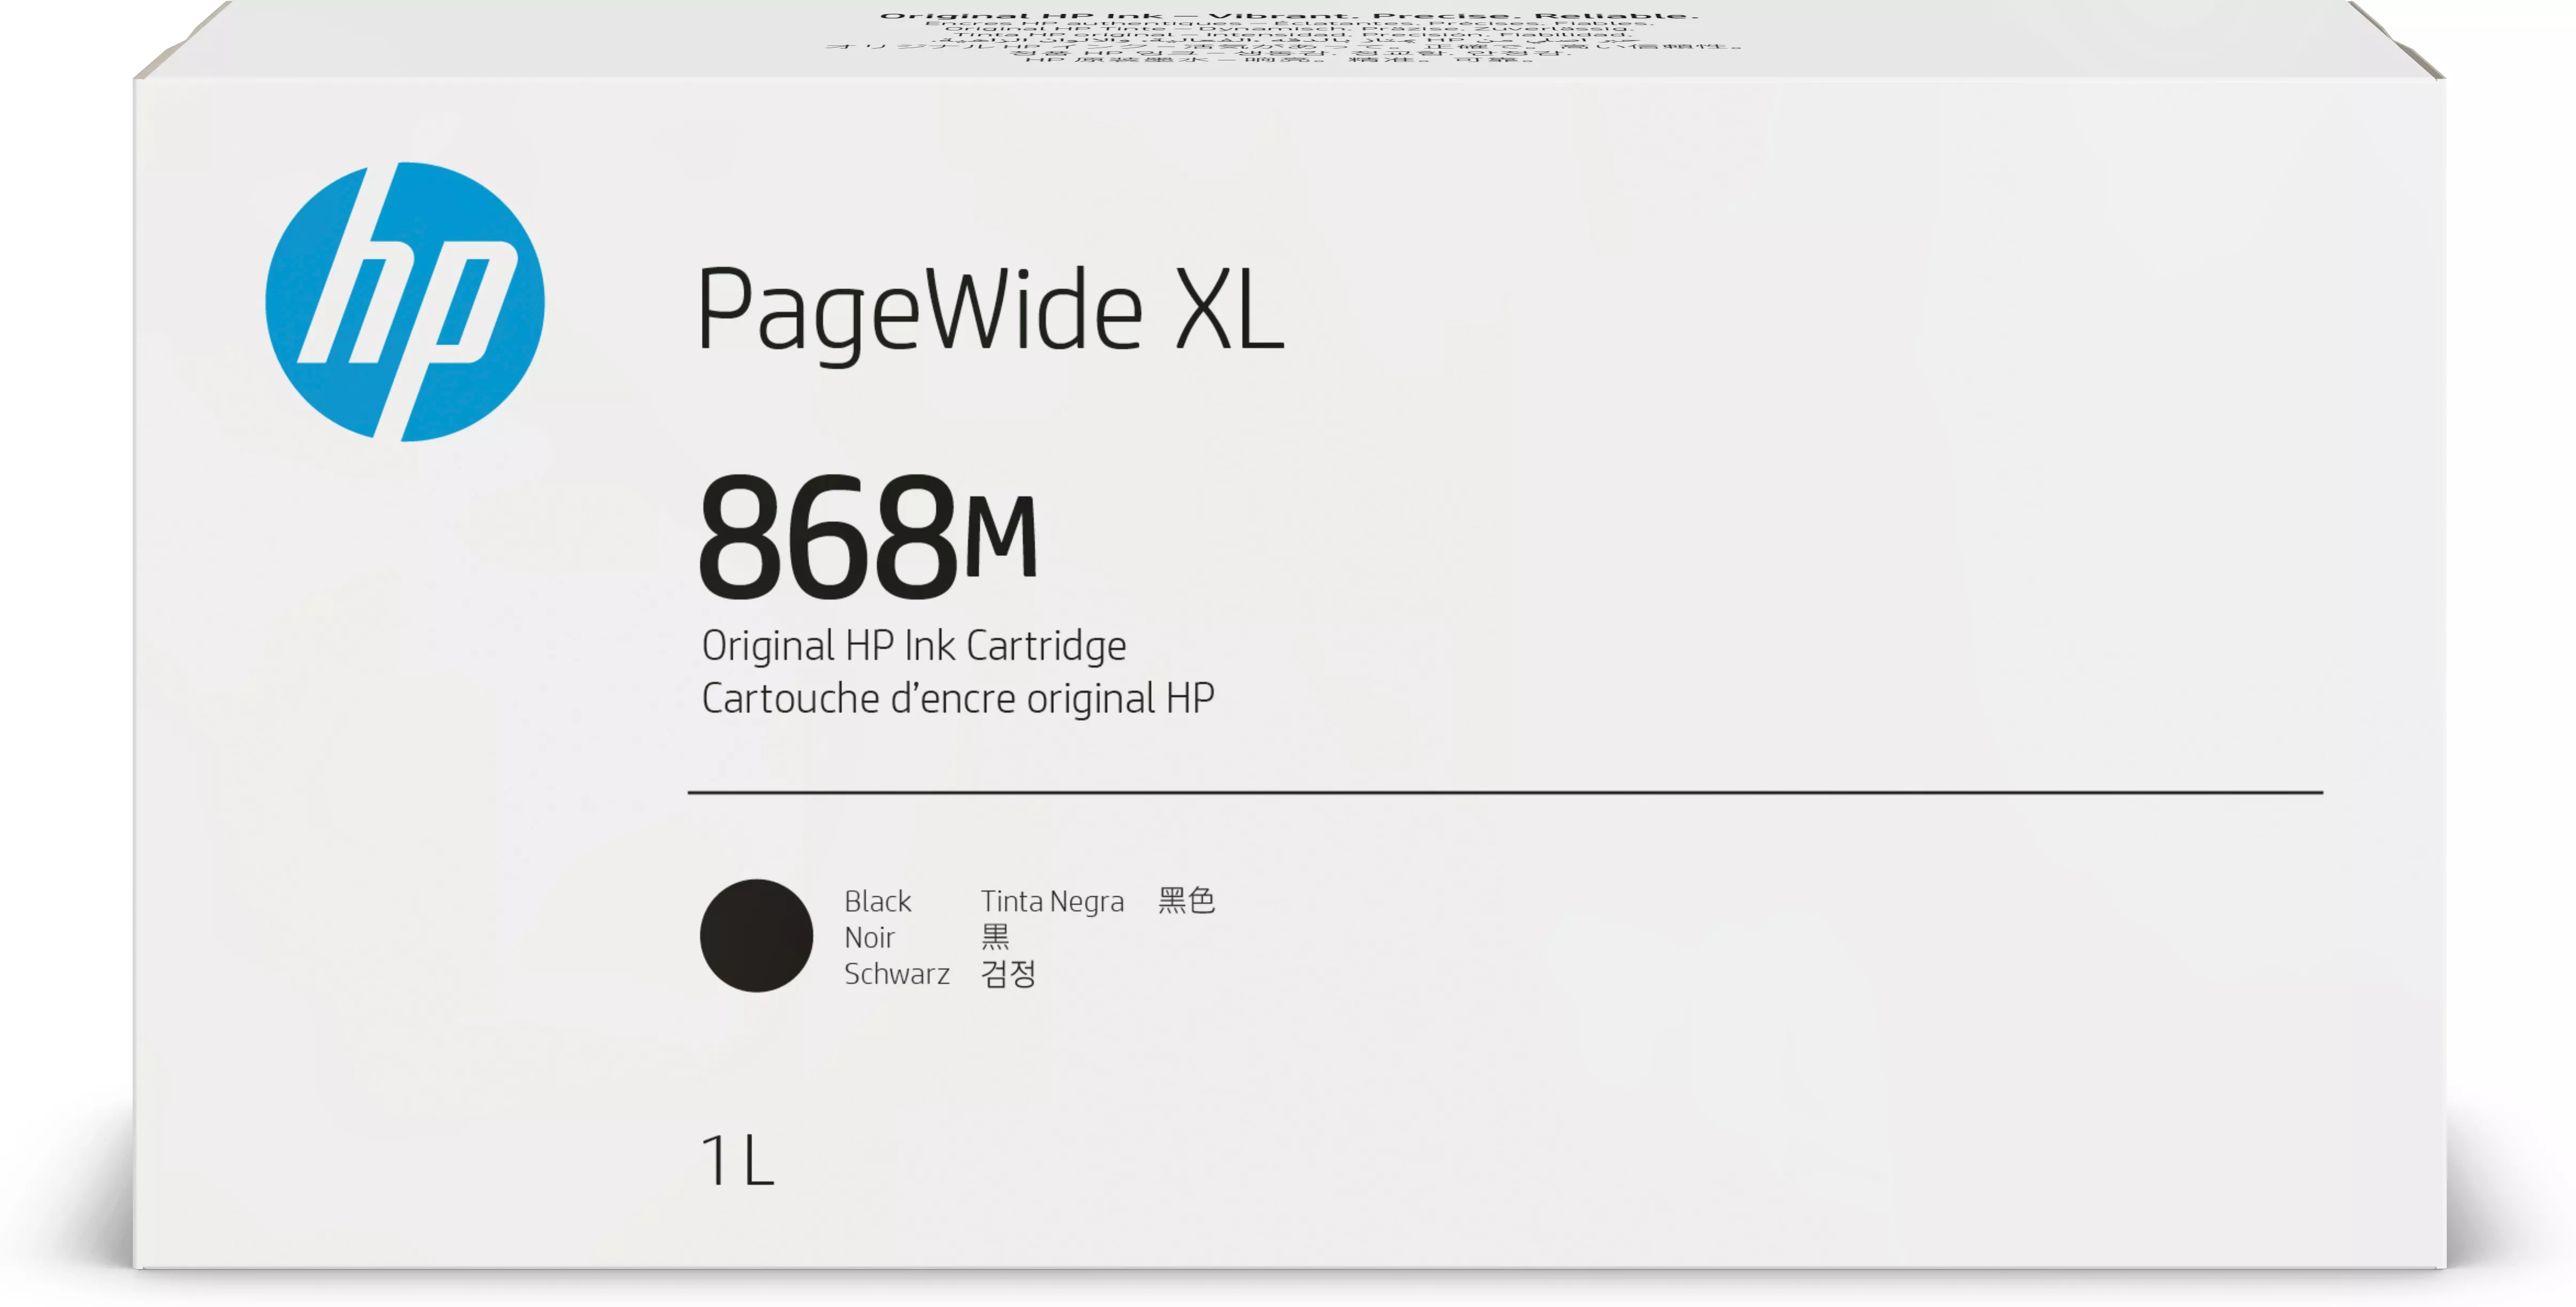 Achat Cartouche d’encre HP 868M PageWide XL, noir, 1 litre au meilleur prix